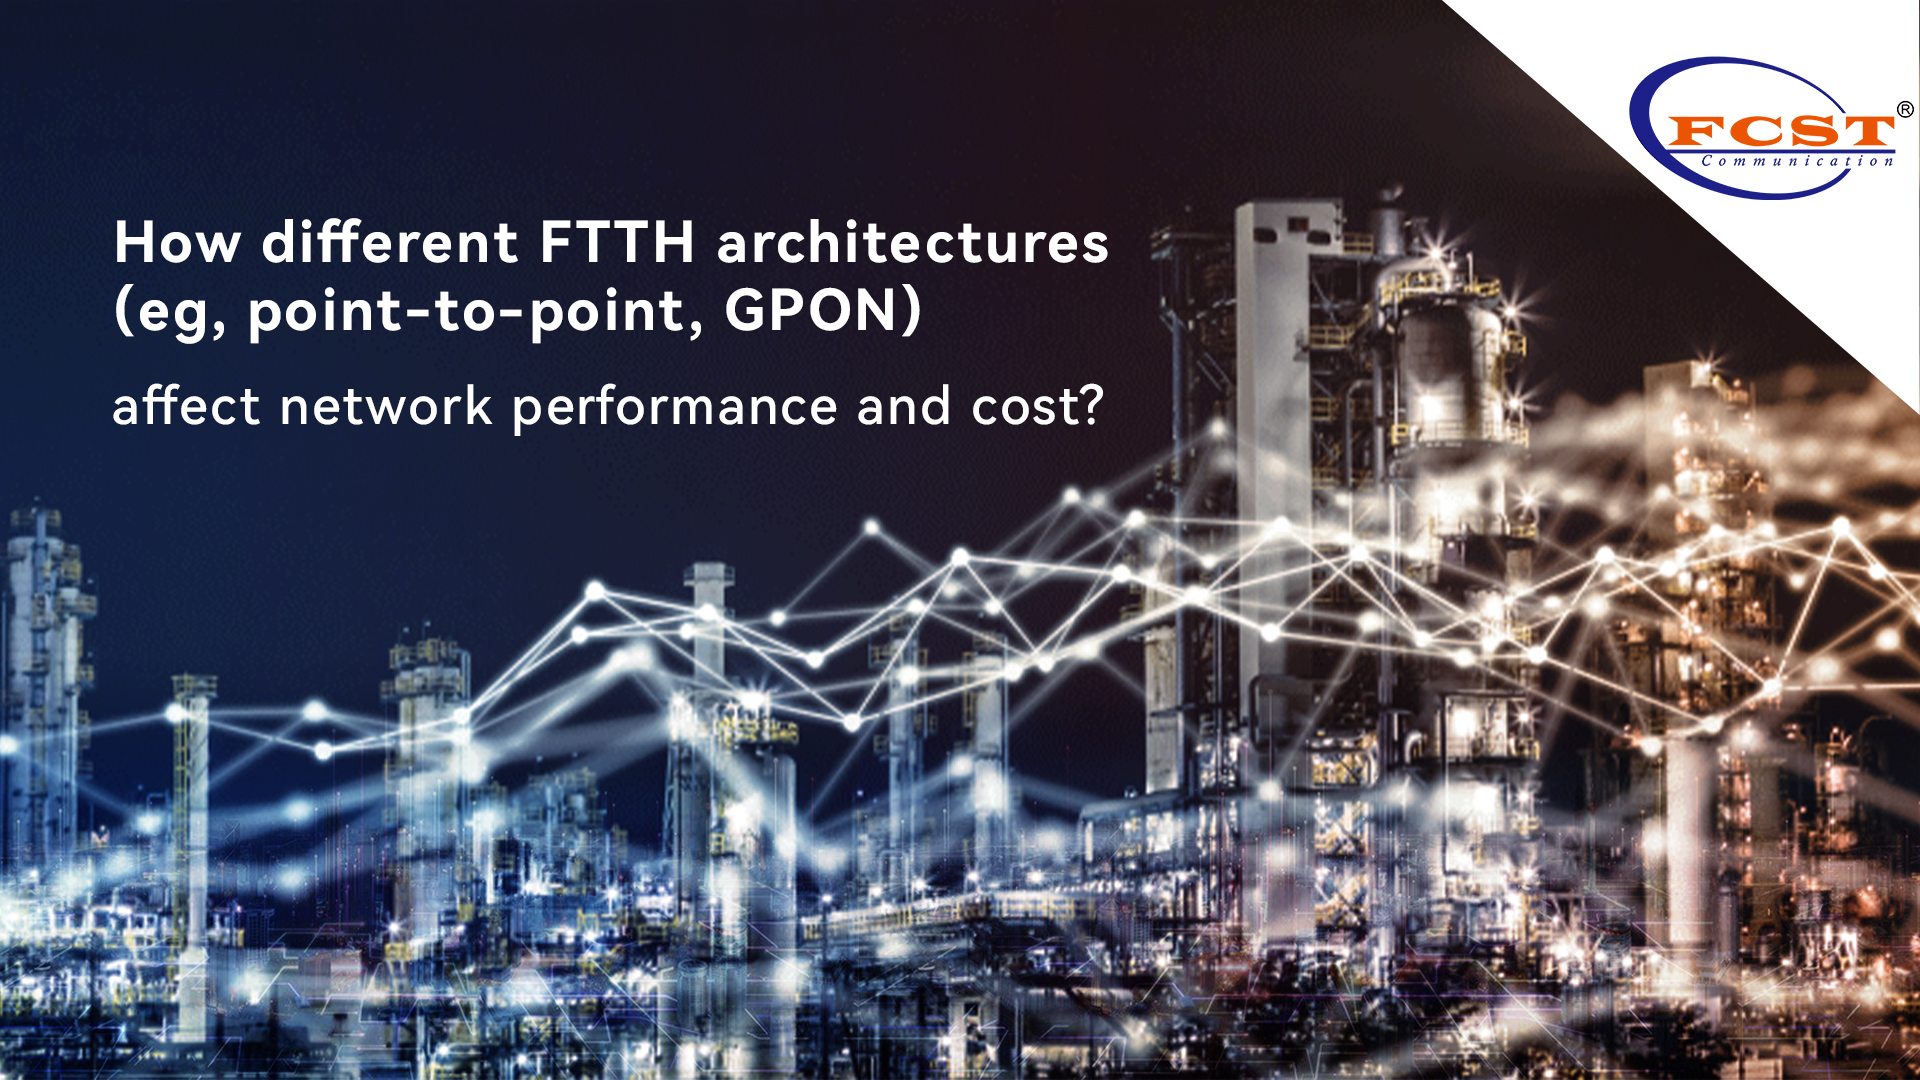 ¿Cómo afectan las diferentes arquitecturas FTTH (por ejemplo, punto a punto, GPON) el rendimiento y el costo de la red?